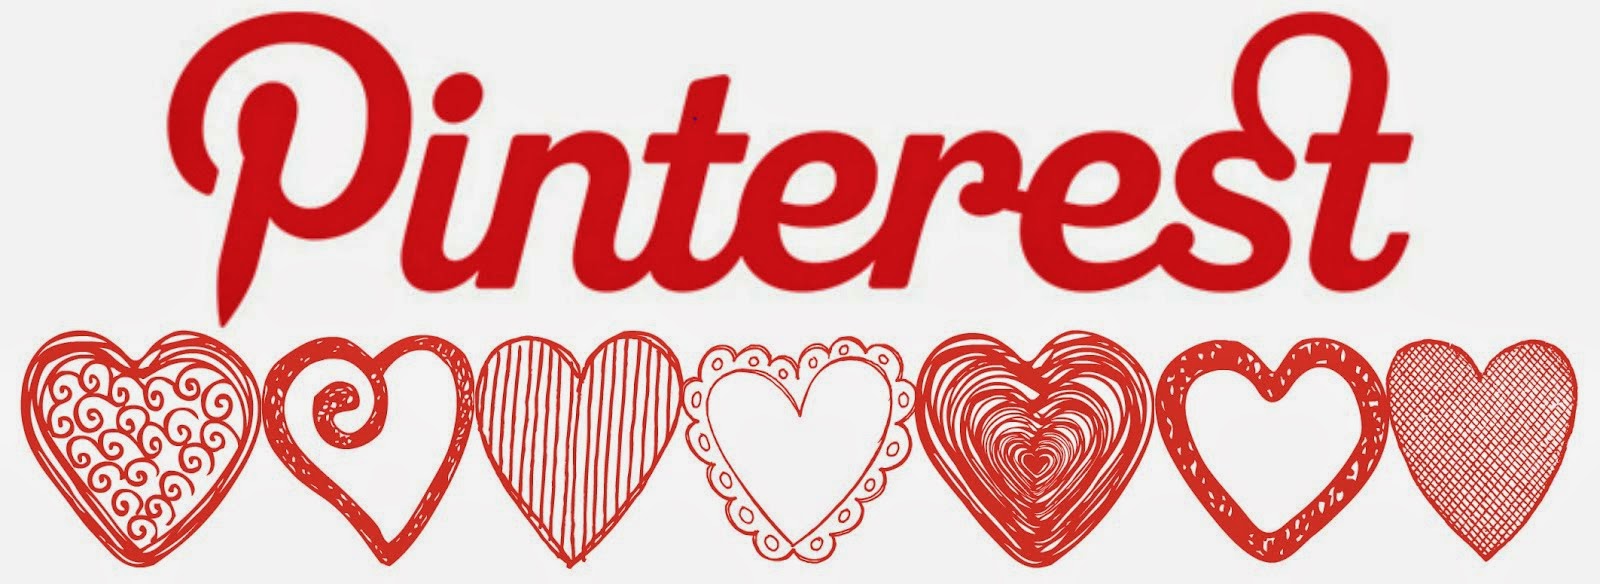 Visita mi Pinterest!!